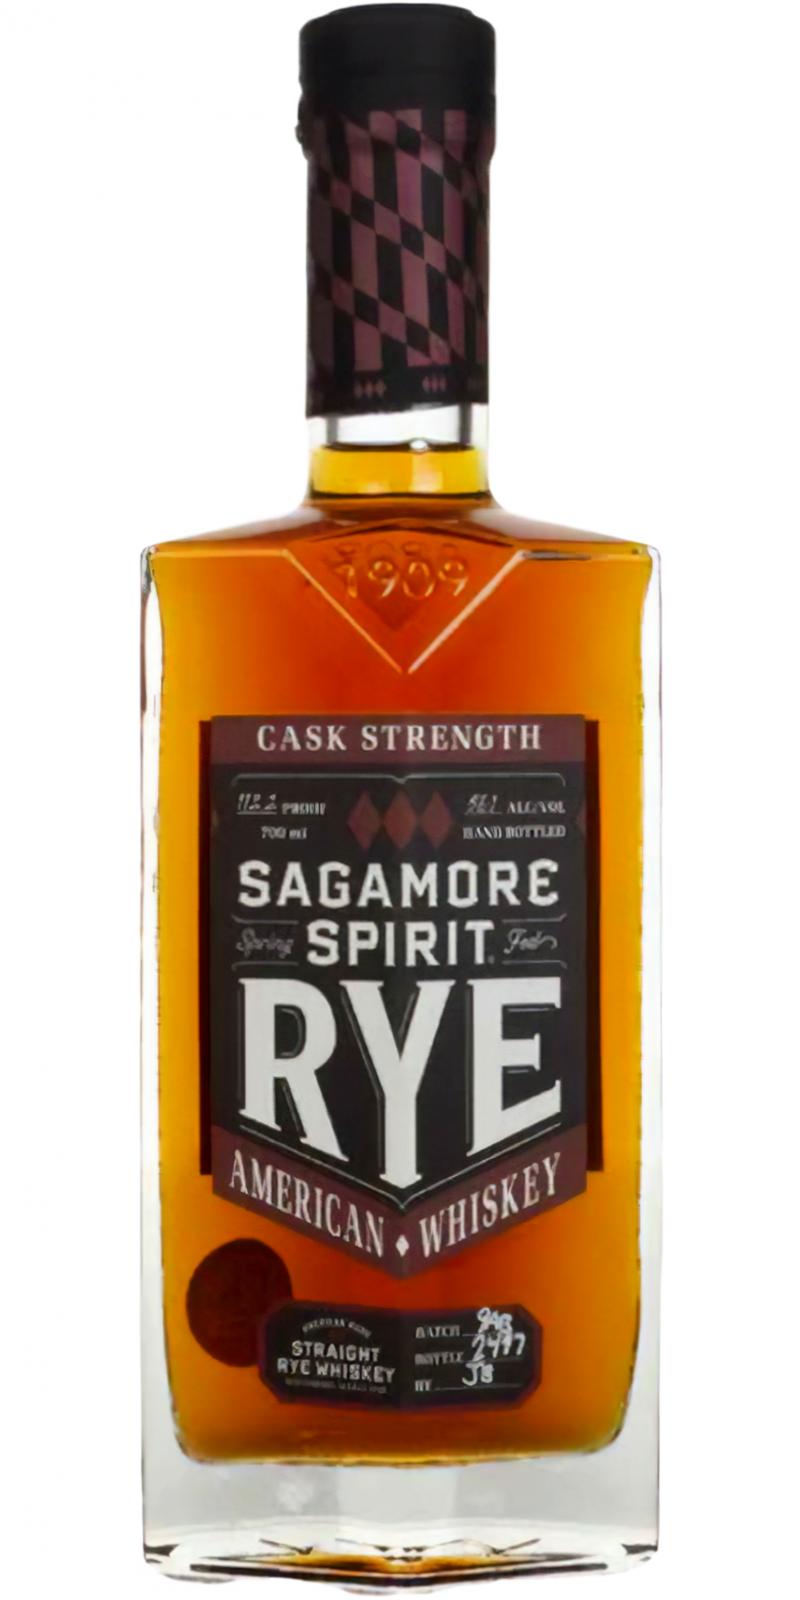 Sagamore Spirit Rye Ratings and reviews Whiskybase